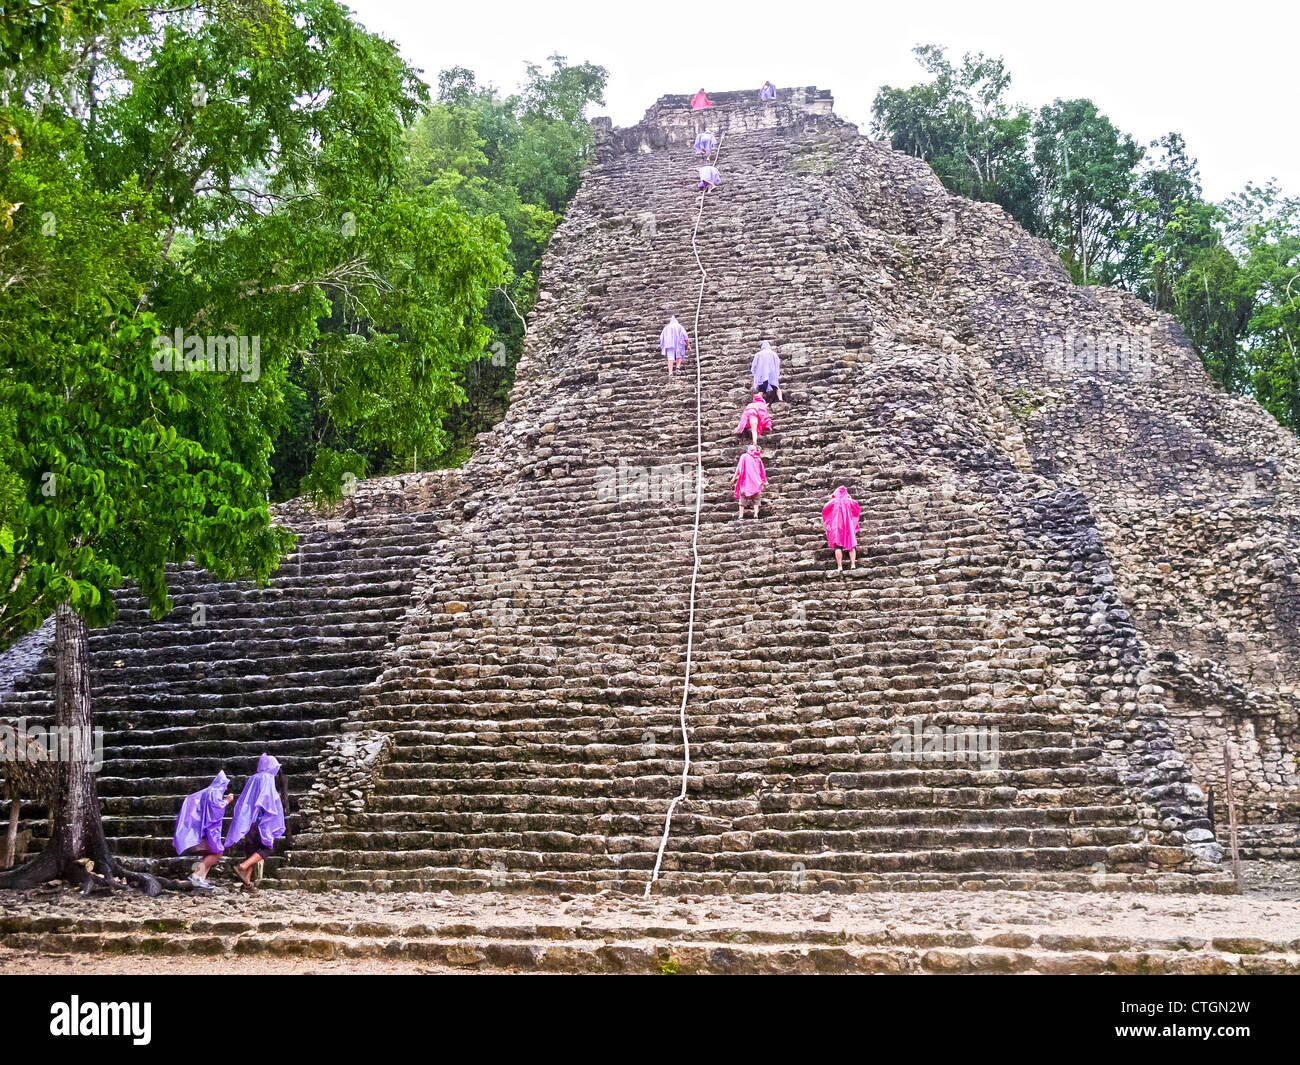 Visitors in raincoats climb Nohoch Muul, a Maya temple at Coba, Mexico Stock Photo